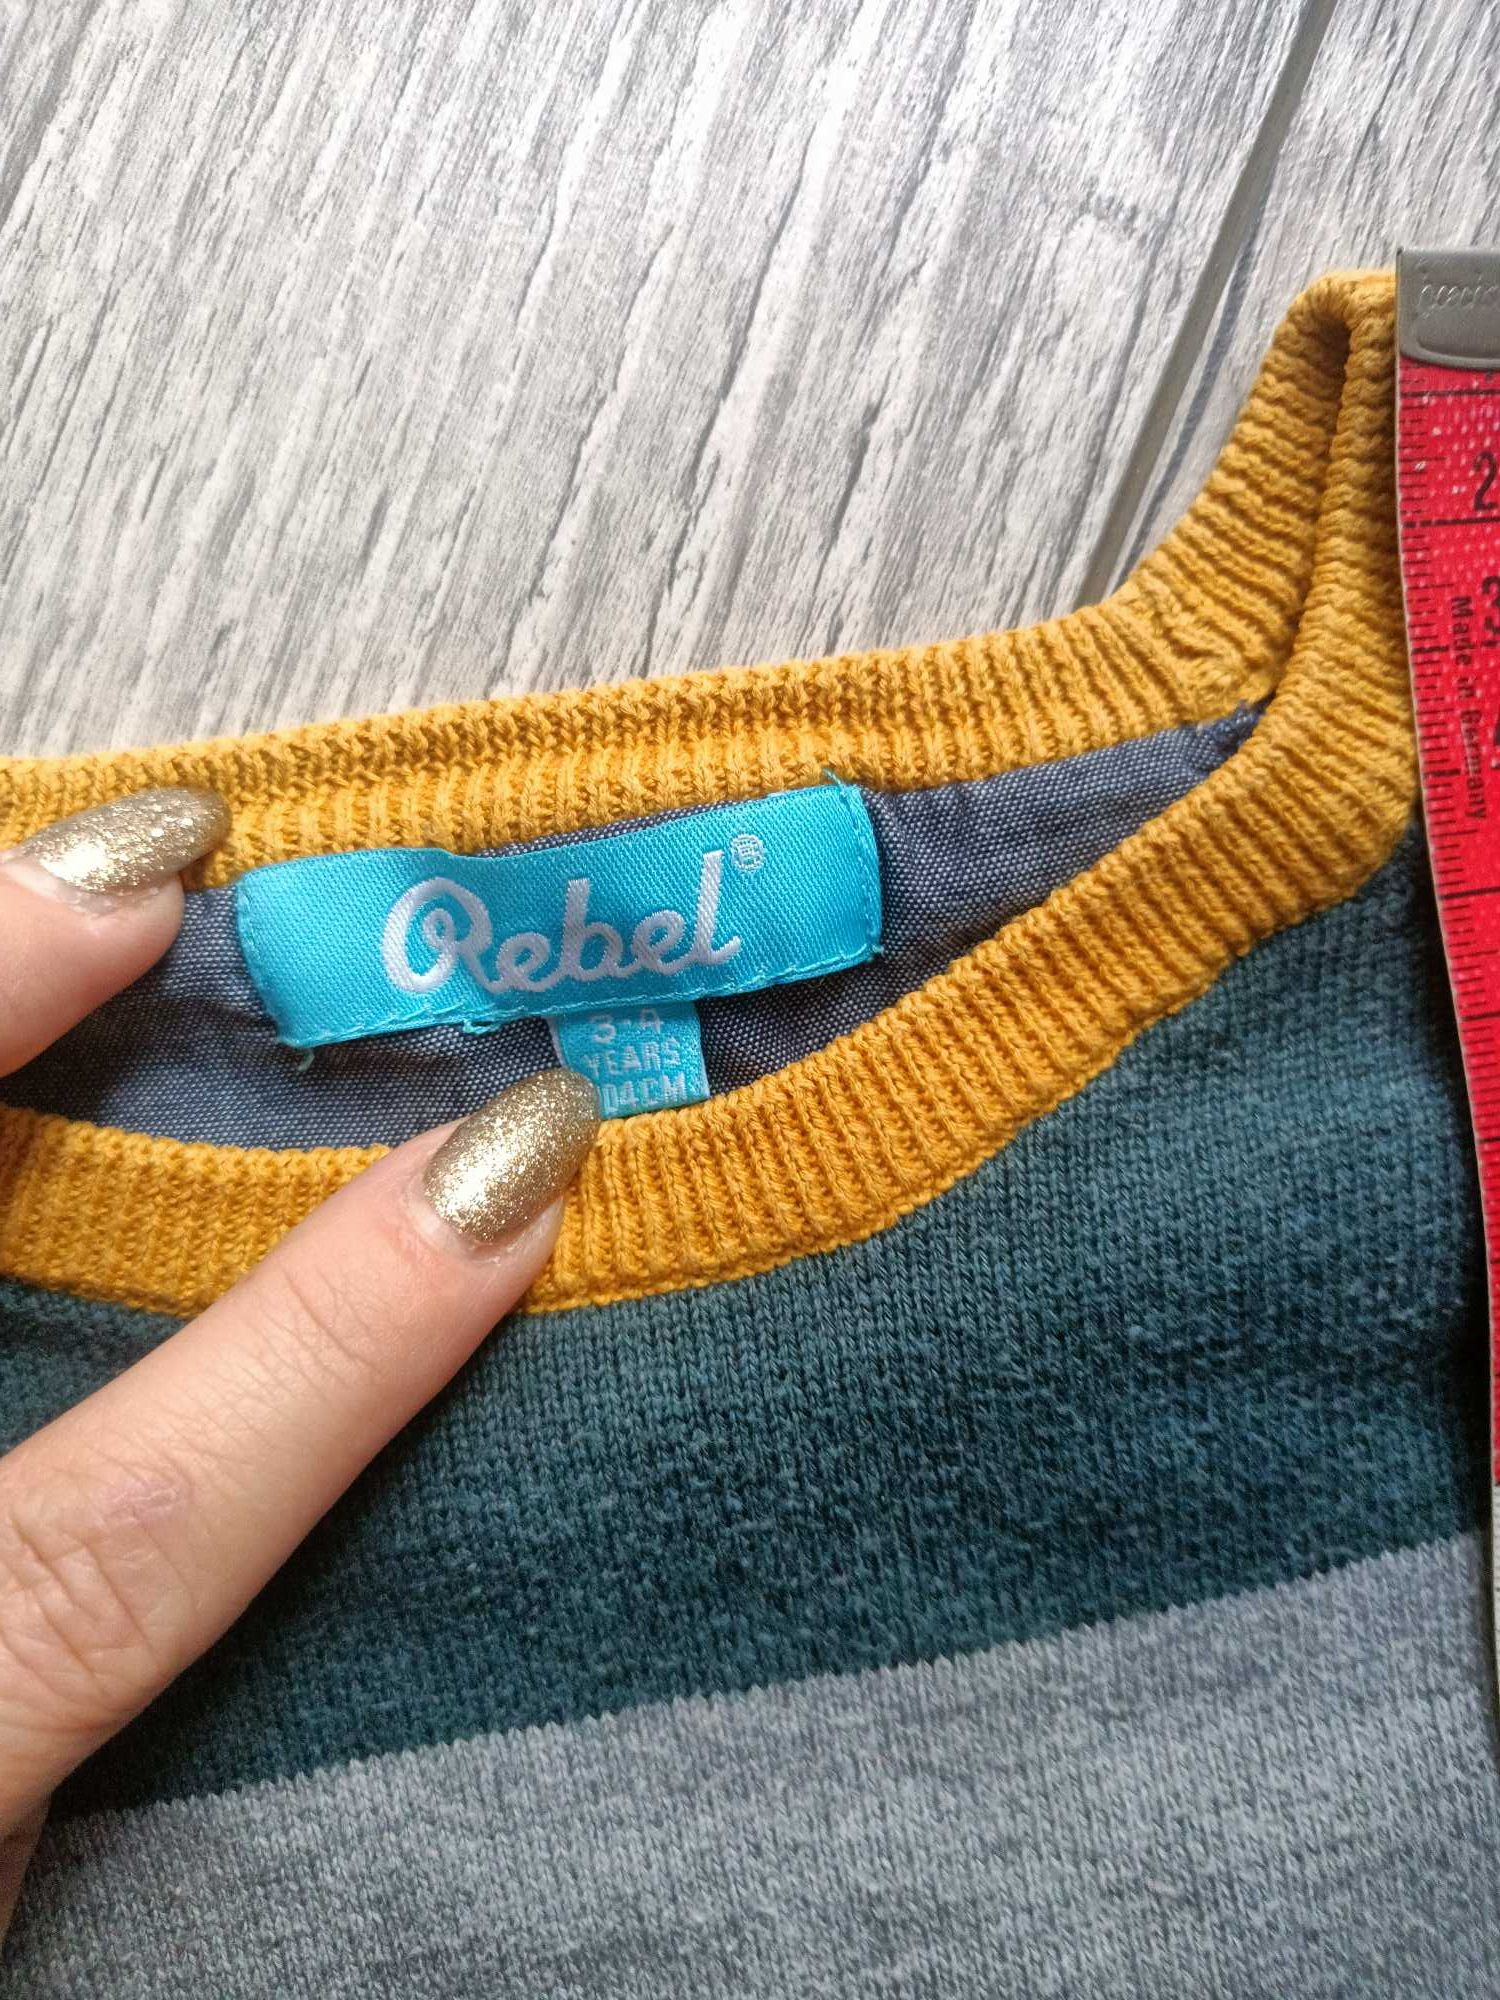 Sweterek chlopiecy Rebel 104